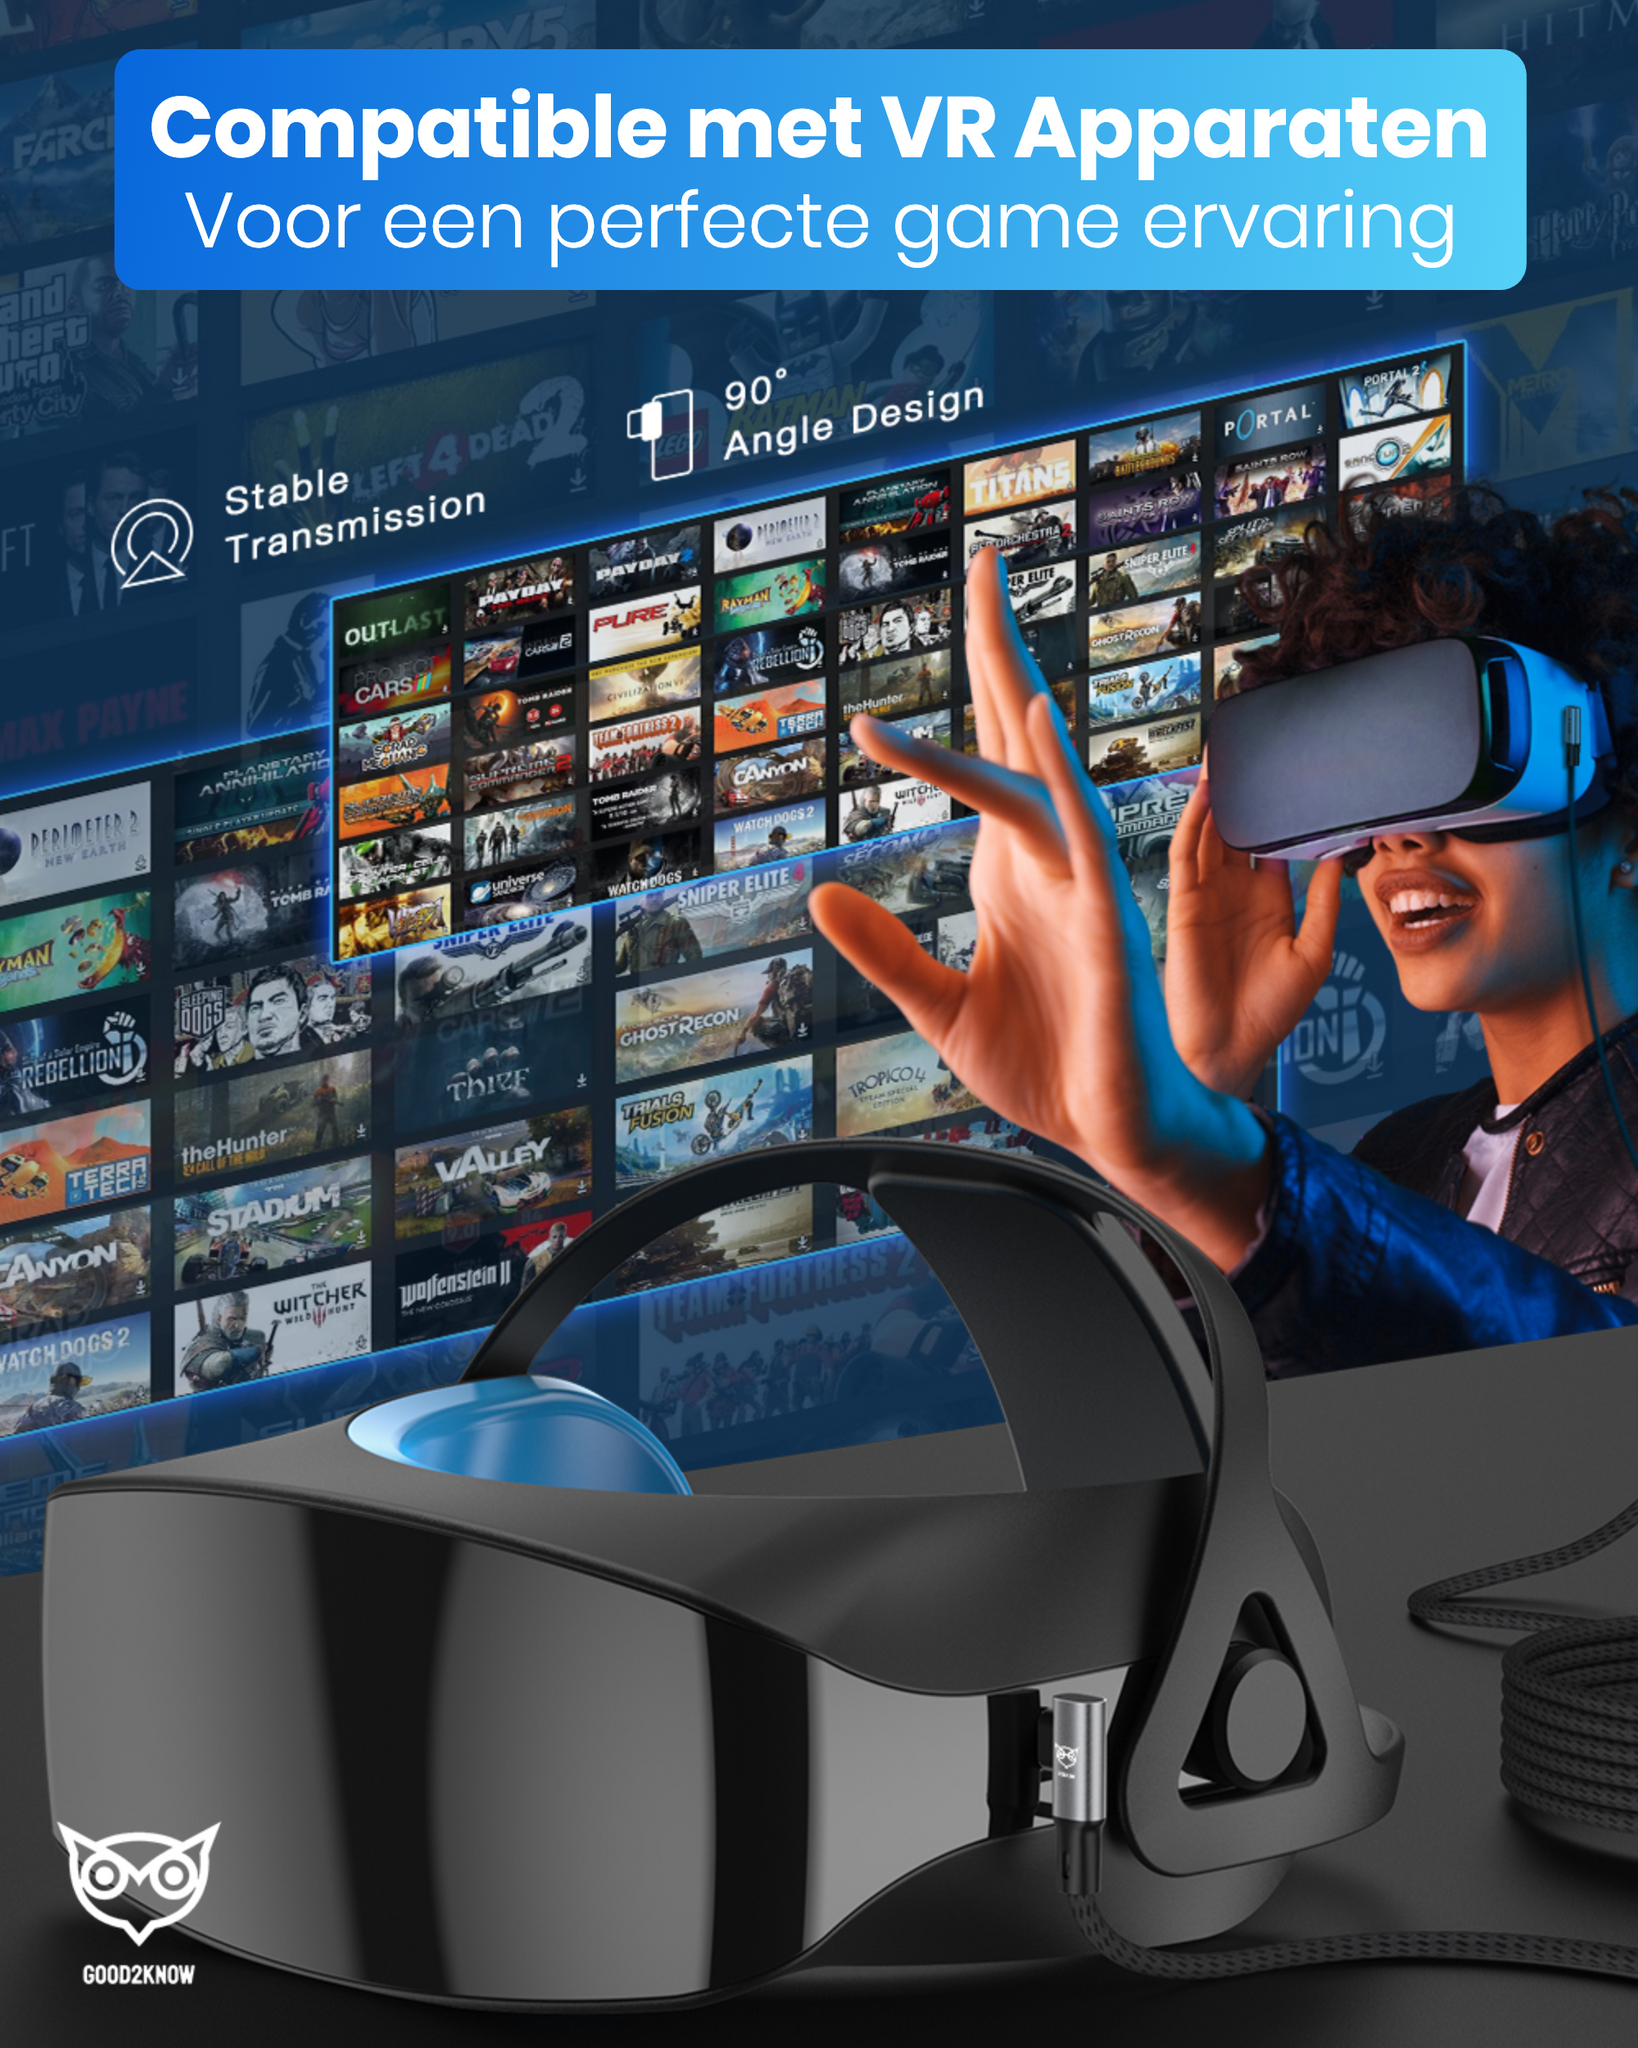 VR Kabel geschikt voor Oculus Quest 2, 1 en Meta 3 Link kabel - USB C - 5 Meter - VR bril